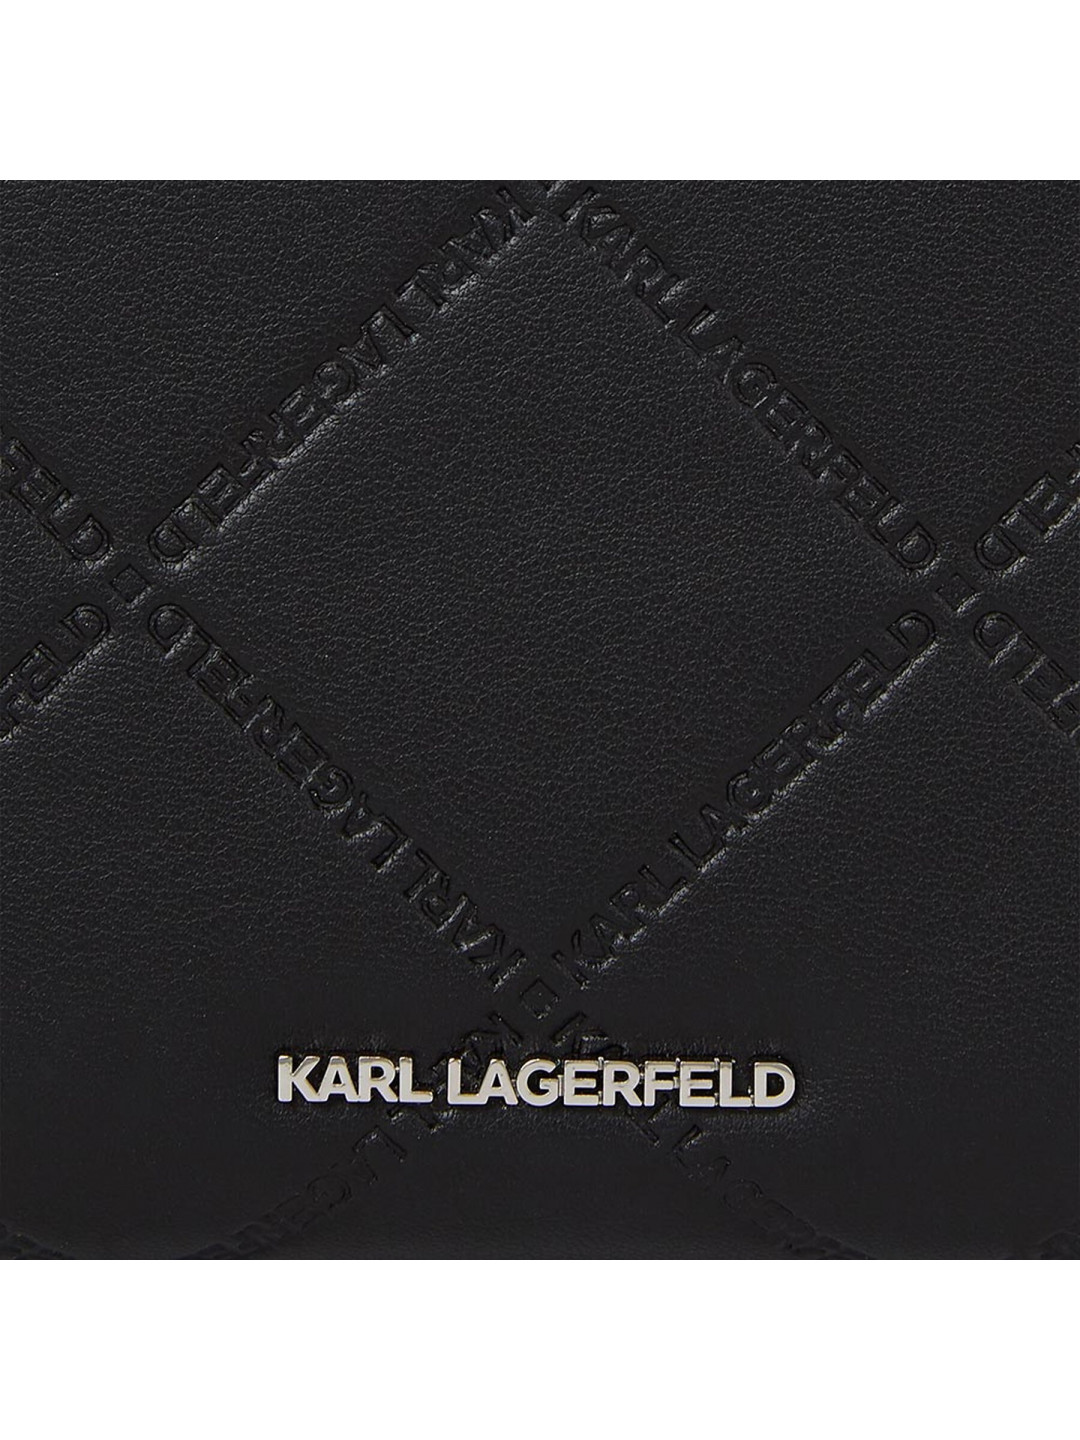 Malá dámská peněženka KARL LAGERFELD